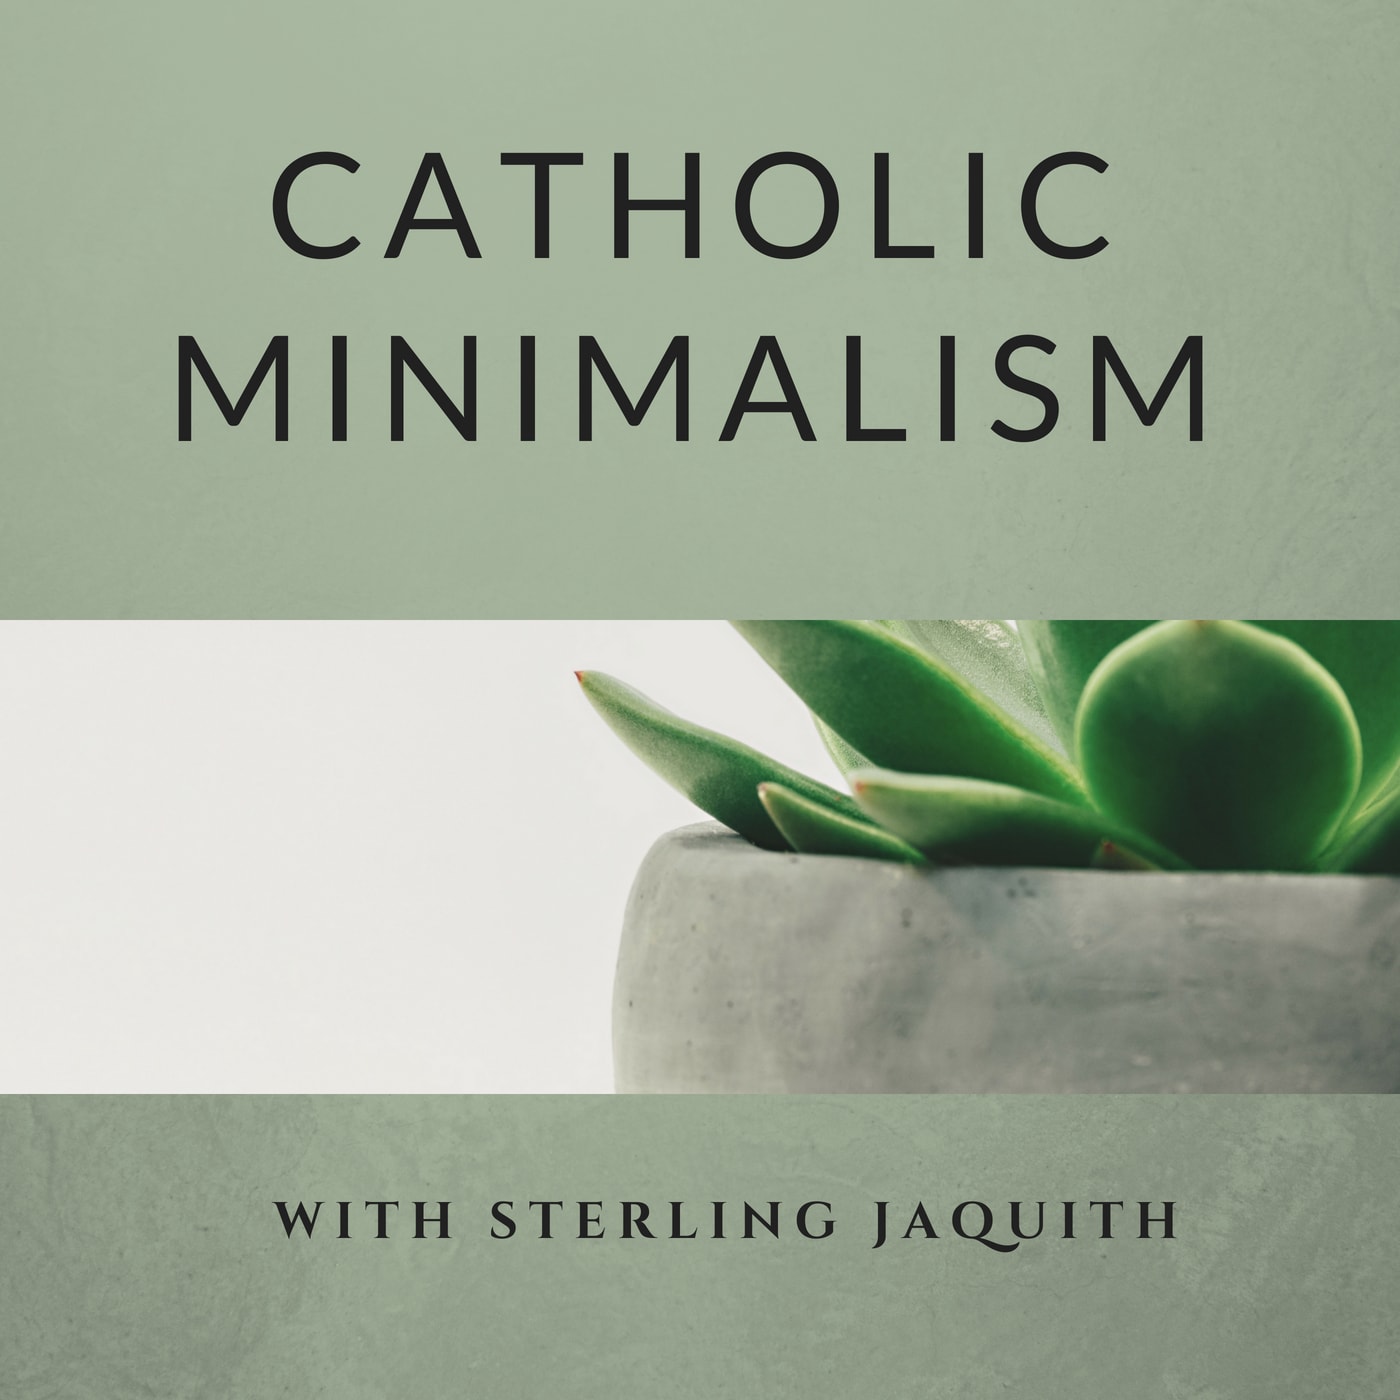 Catholic Minimalism Ep 02 - Overview of 8 Week Challenge